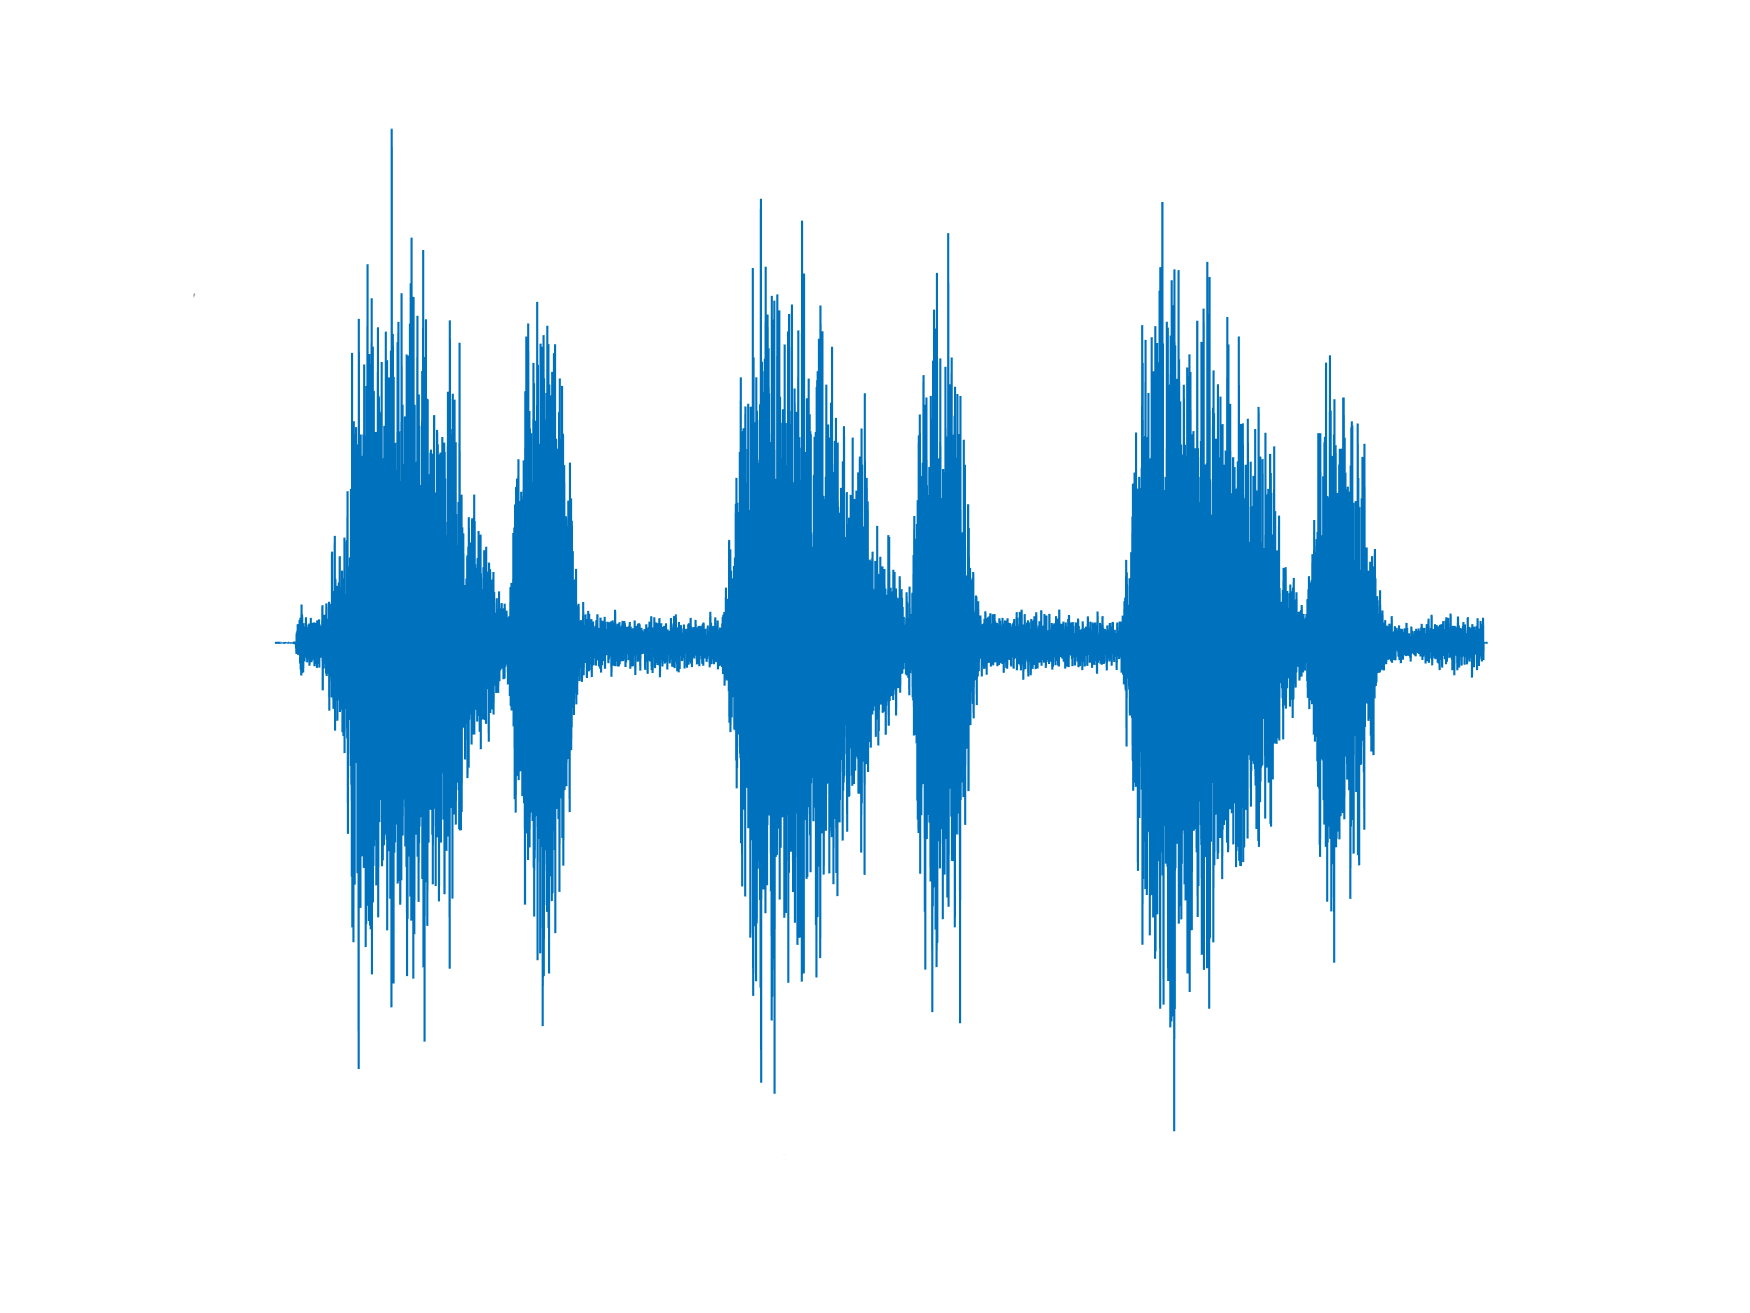 صداهای طبیعی ریه - وزیکولار (Vesicular) نرمال